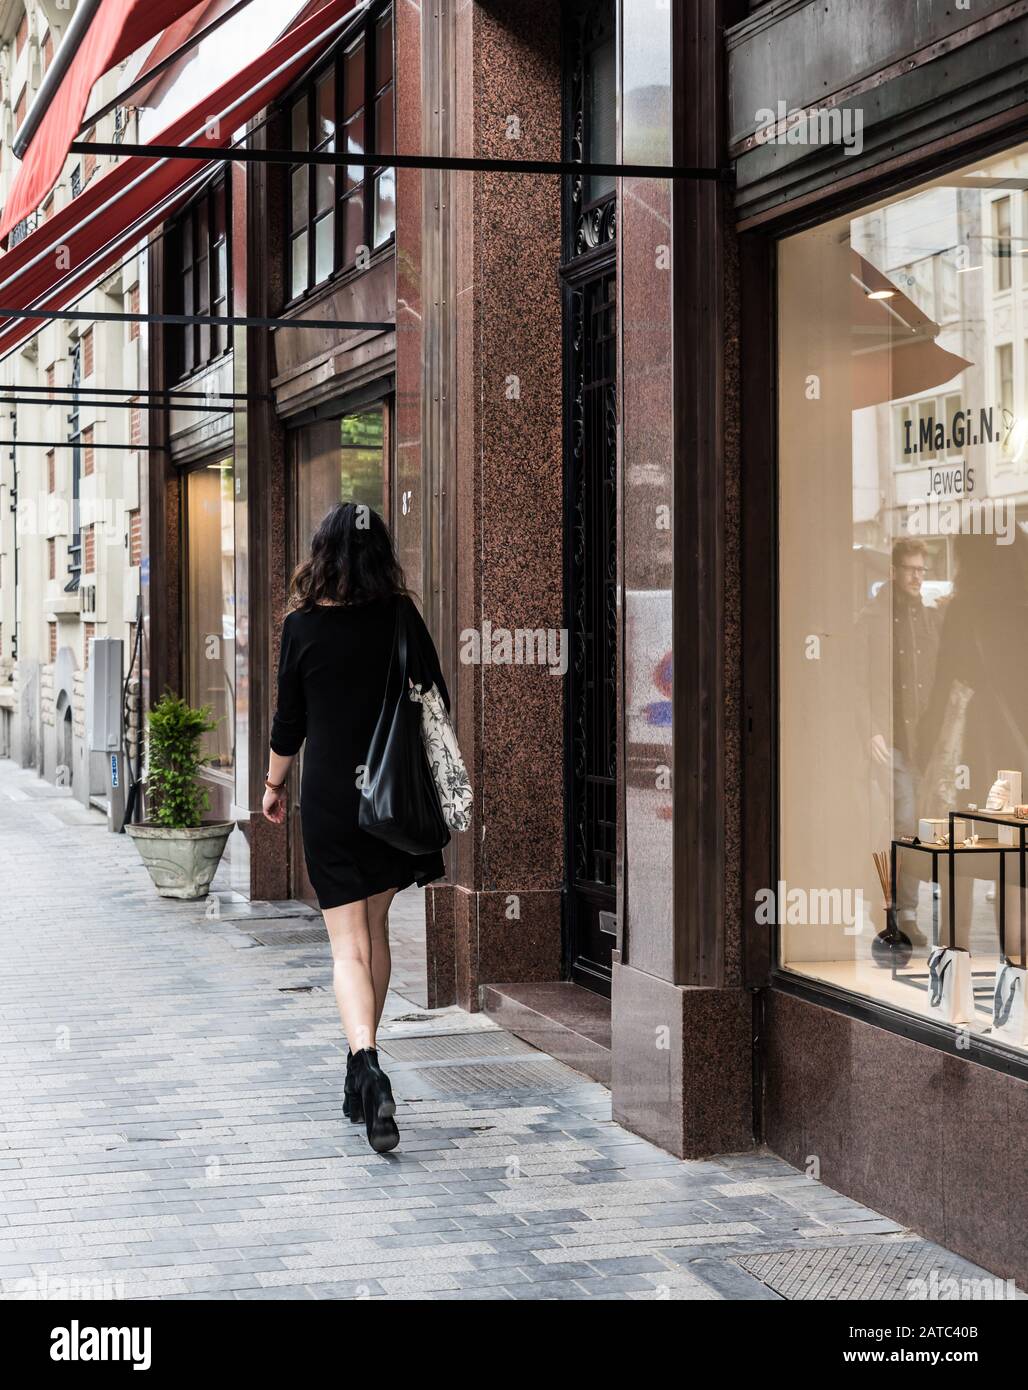 Brüsseler Altstadt / Belgien - 06 07 2019: Stilvoll schöne Frau in schwarzem Kleid, die durch die gehobene Einkaufsstraße Dansaert geht Stockfoto